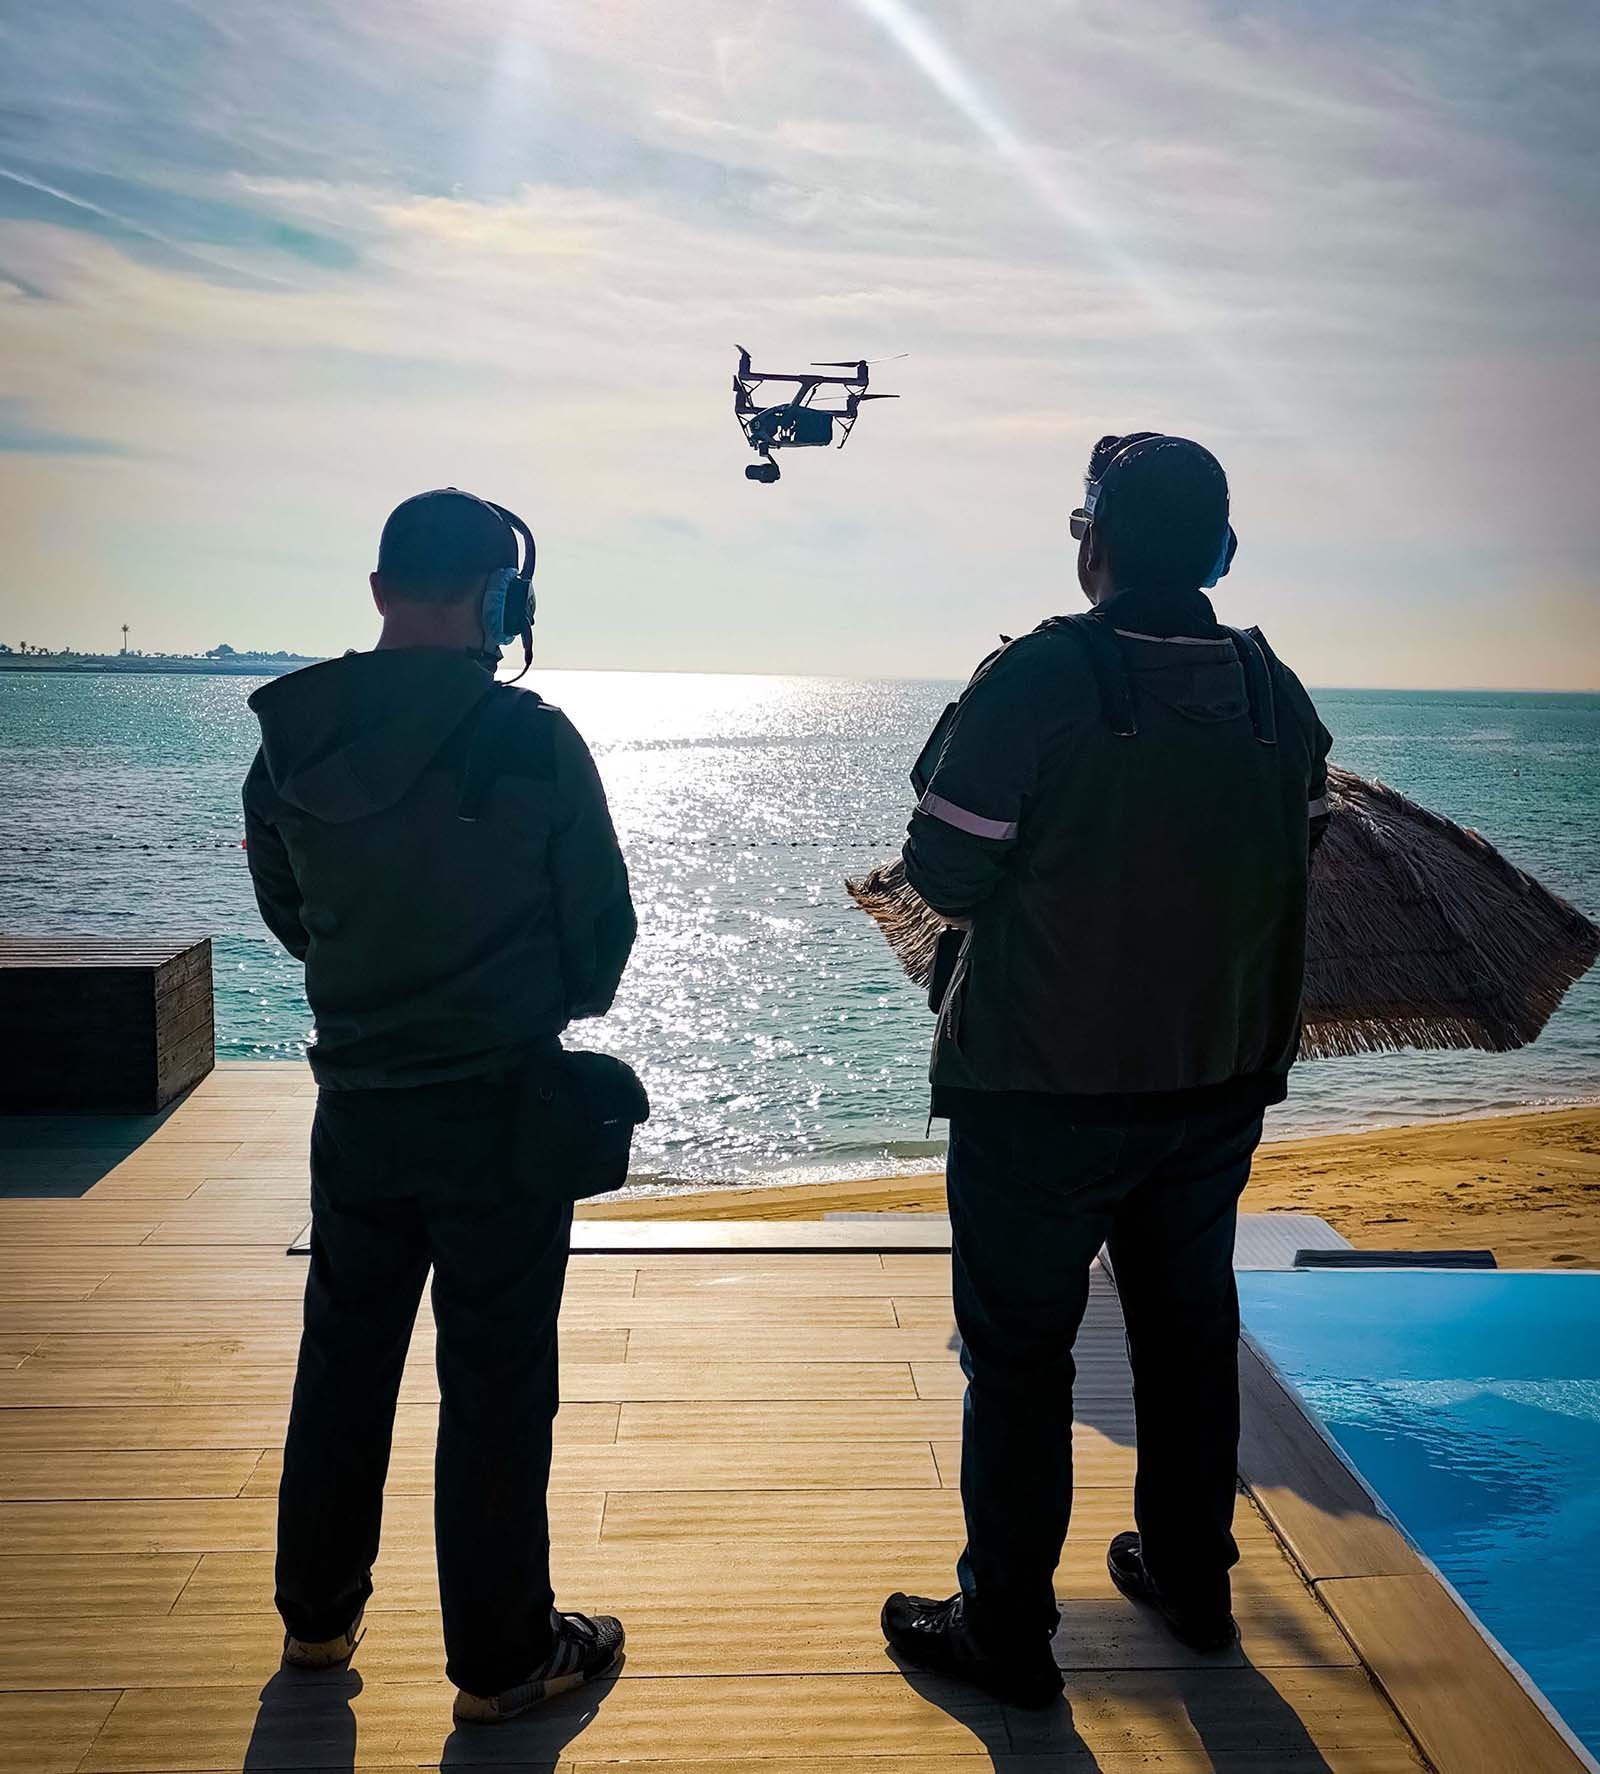  Dos operadores de drones con paneles de control supervisan un rodaje en la playa, coordinando las operaciones de filmación aérea. 